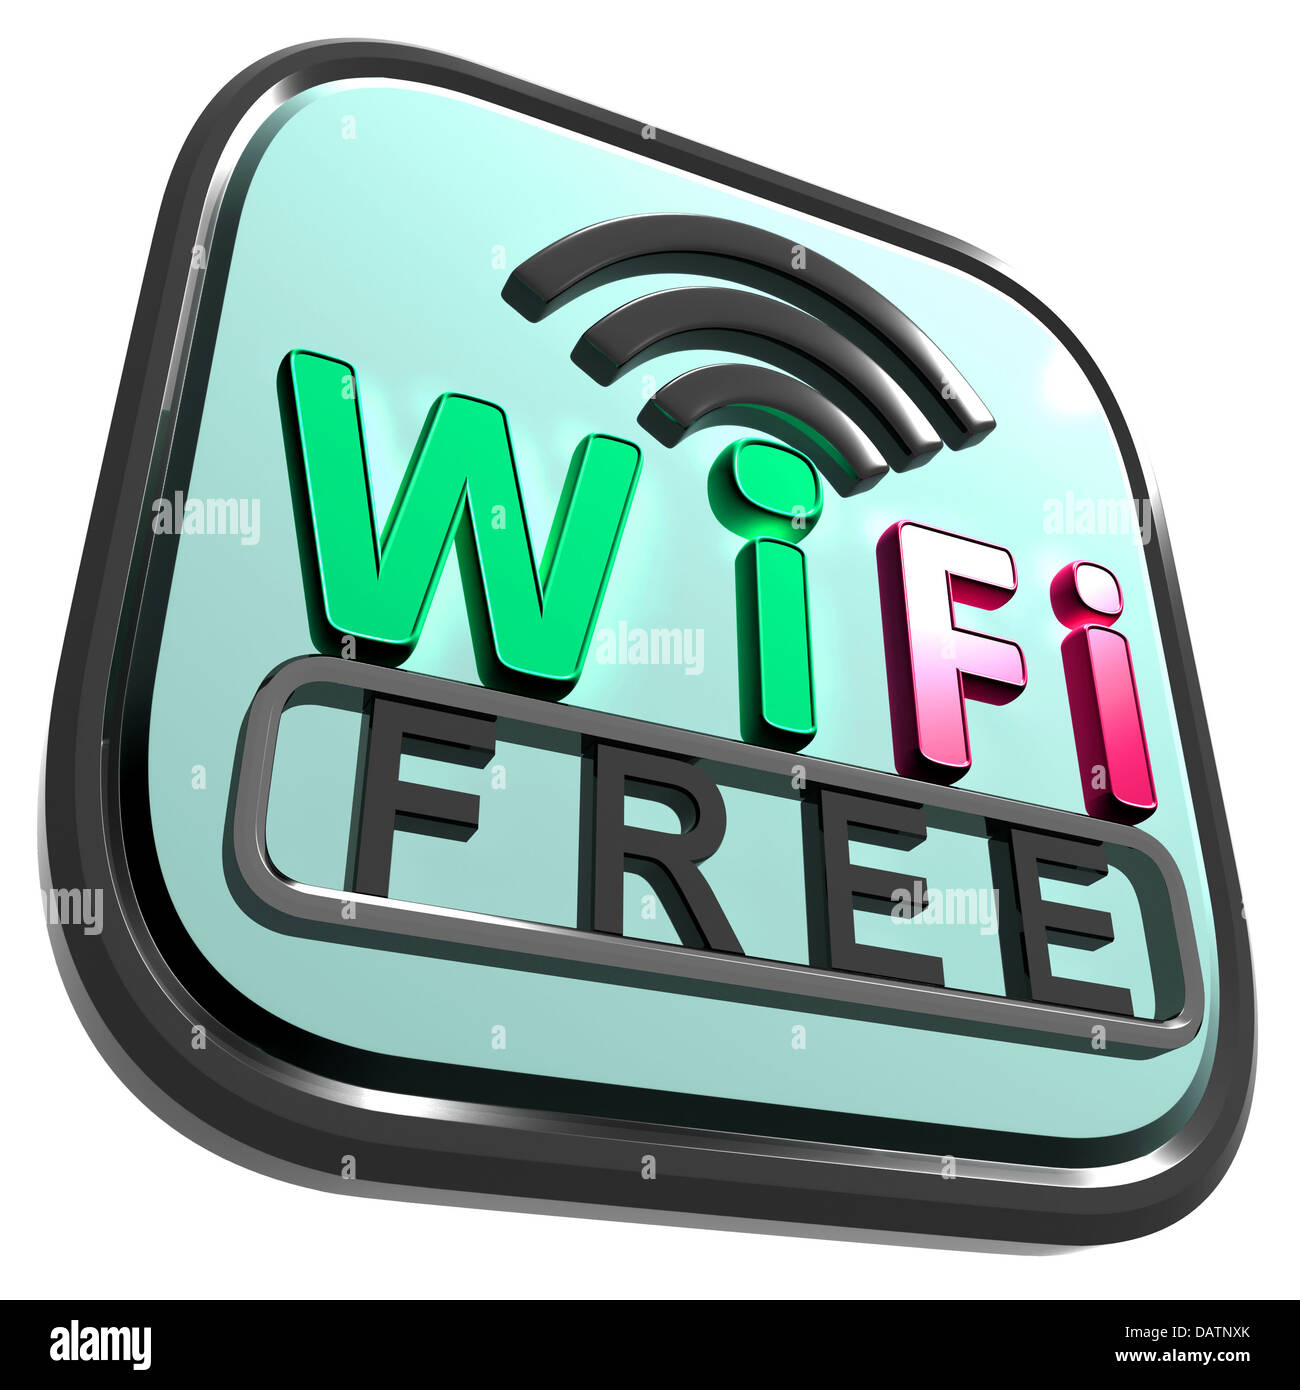 Acceso gratuito a Internet Wifi Conexión Inalámbrica muestra Foto de stock